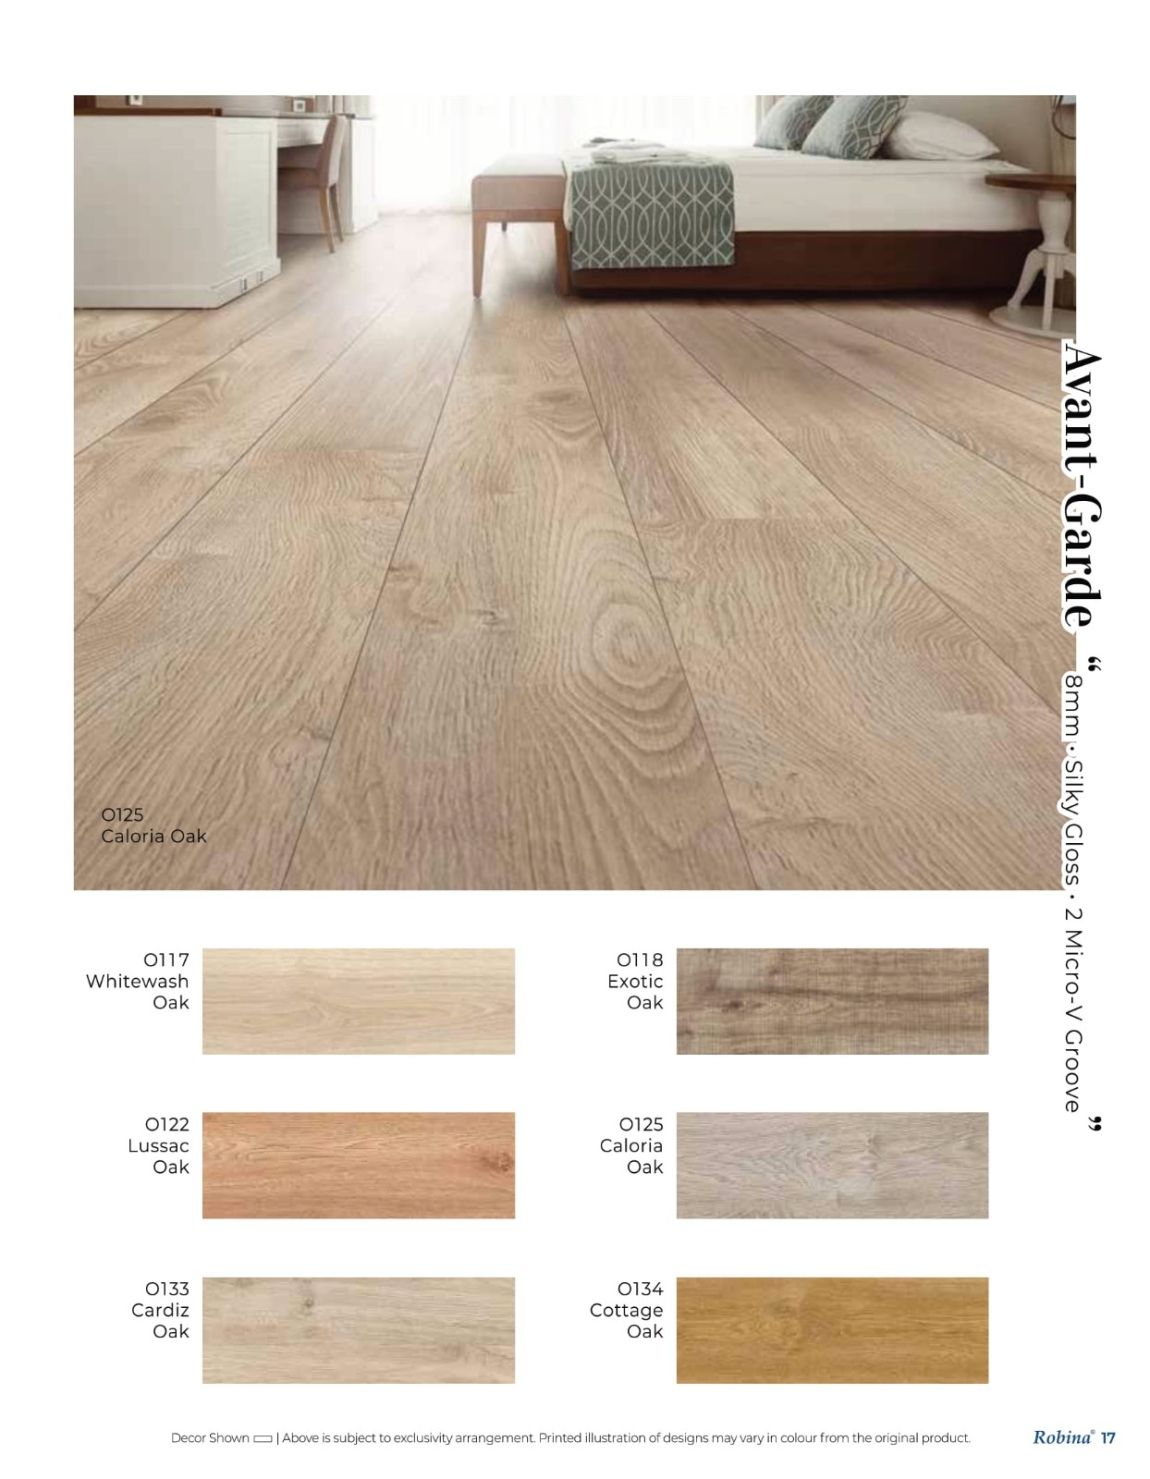 Robina Floor Catalog Brands: Robina Floor Flooring & Floor Laminate Catalog & Brochure